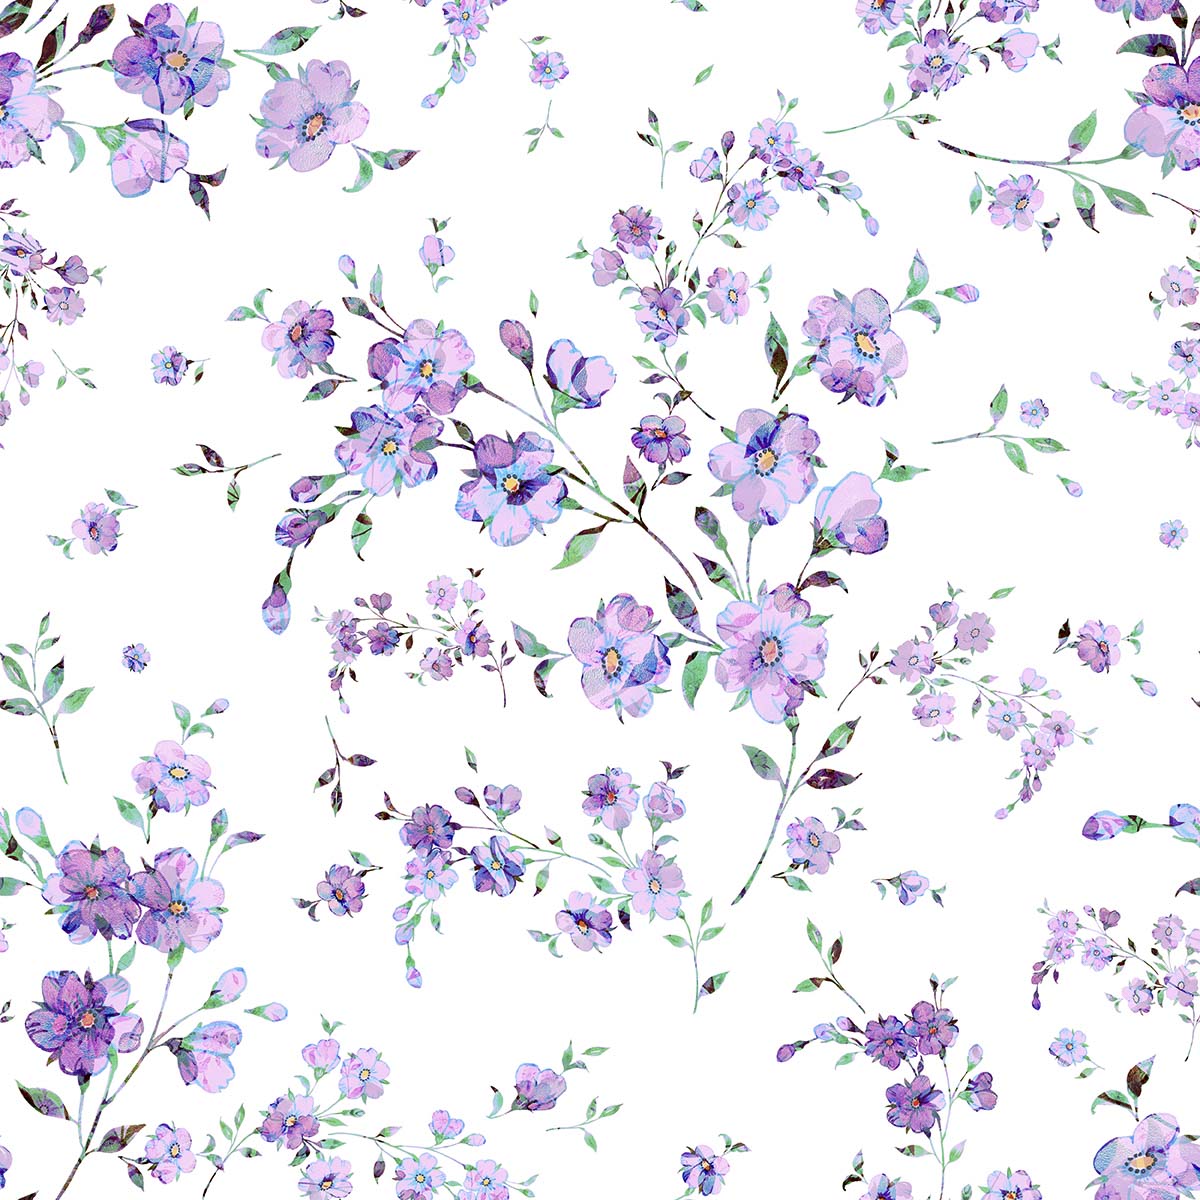 A pattern of purple flowers